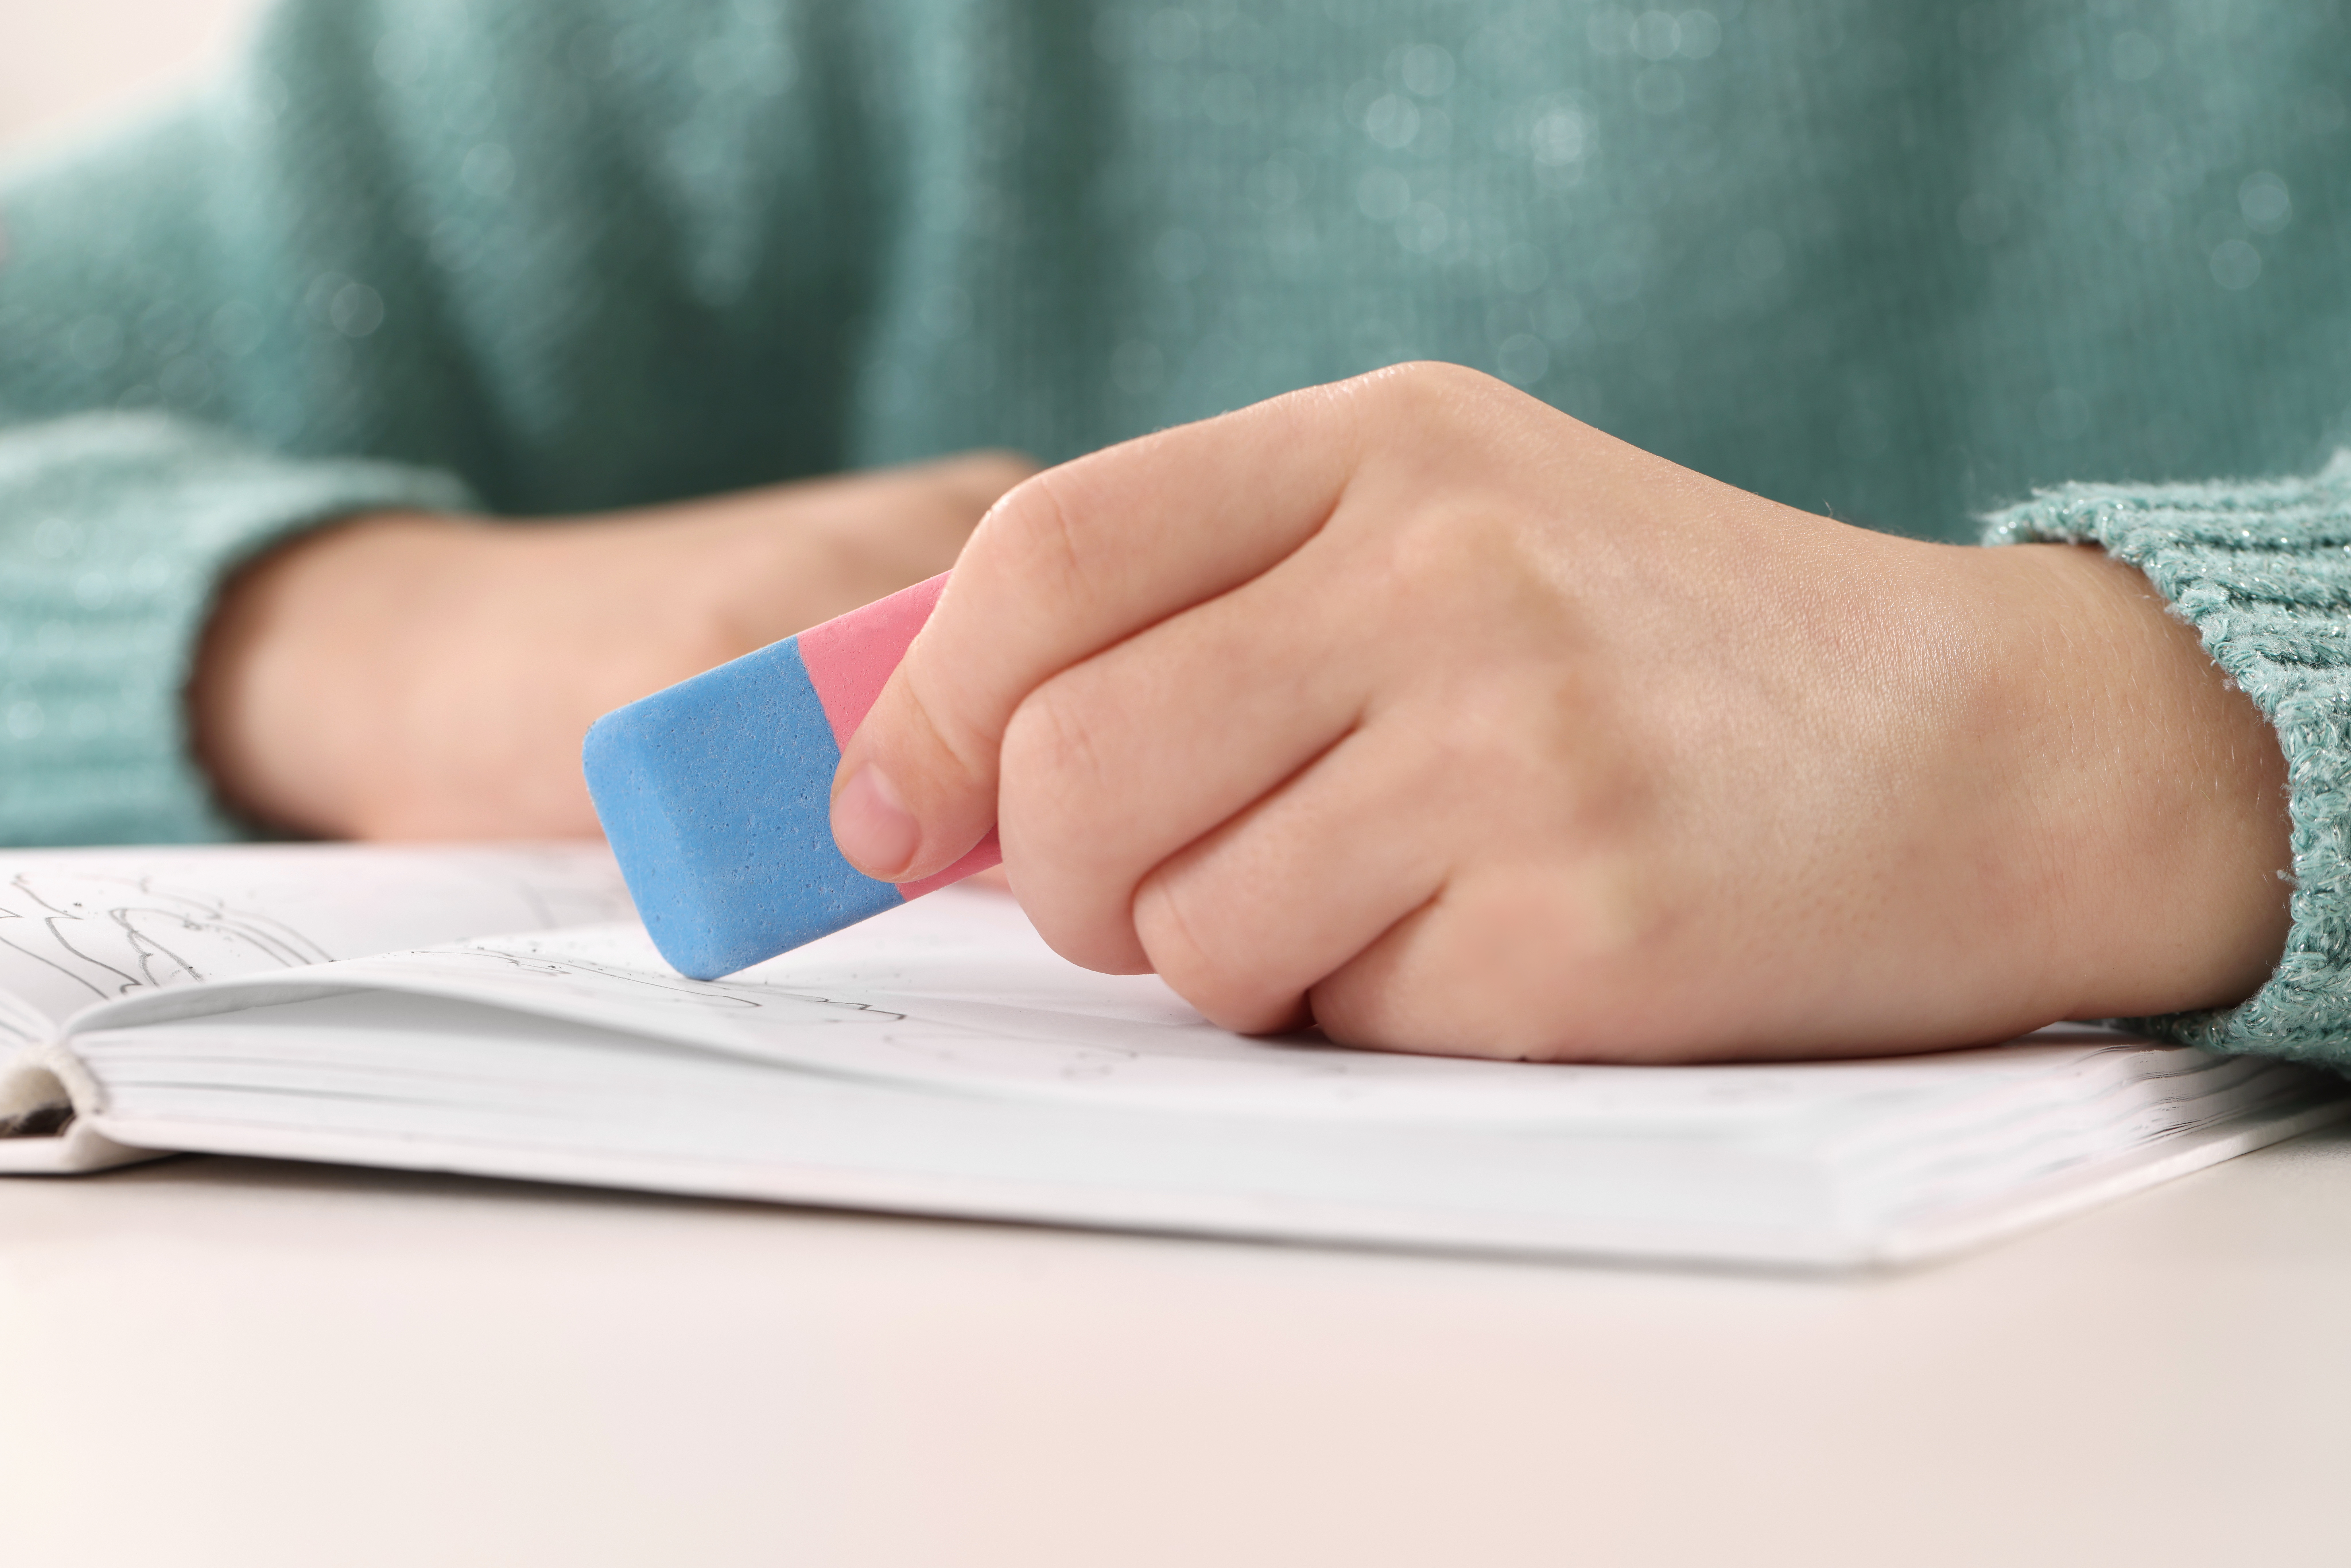 Kind hält rot-blauen Radiergummi in der Hand und radiert im Heft.